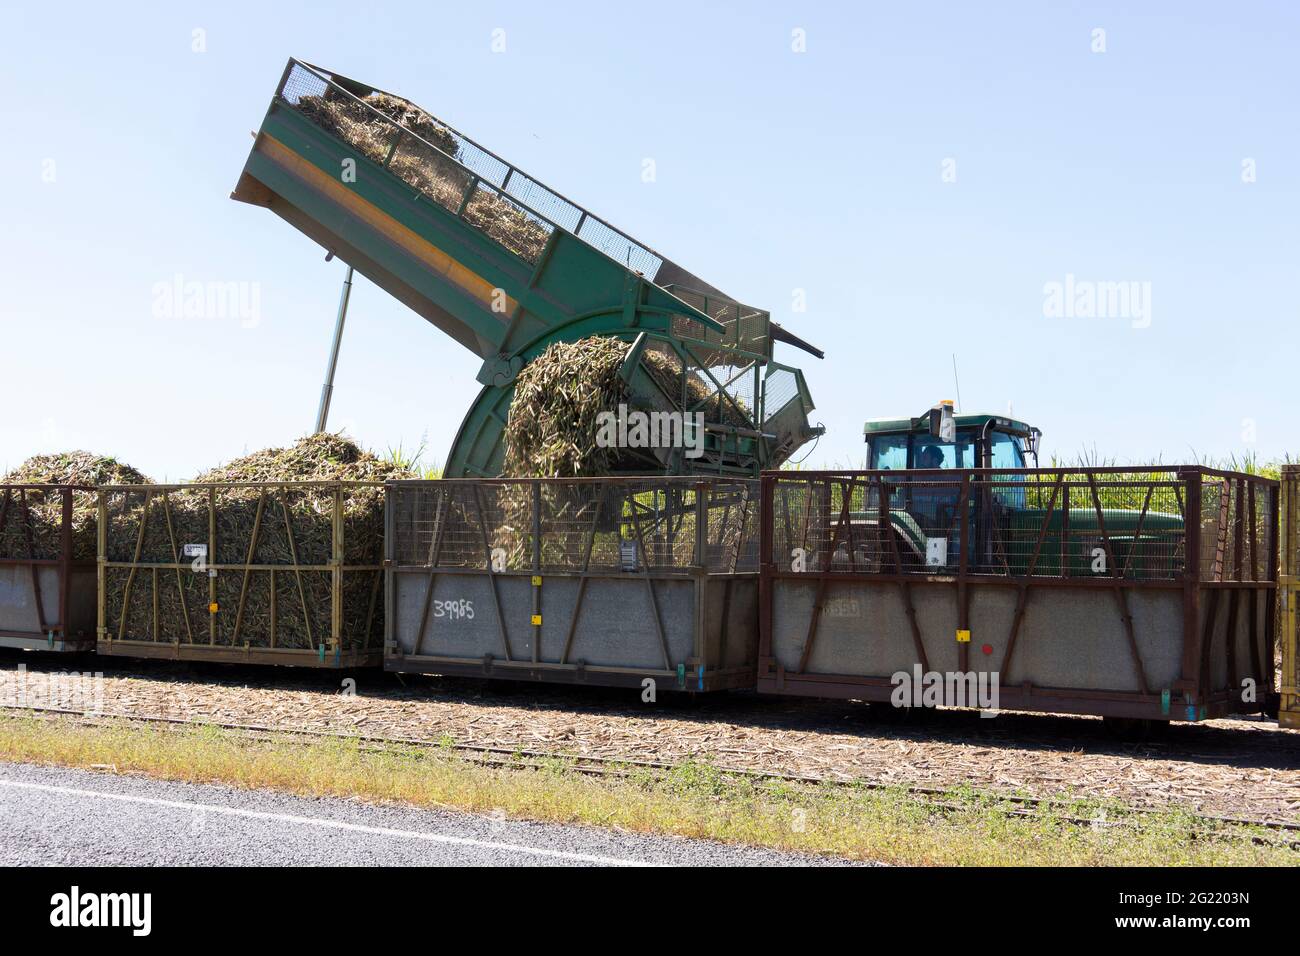 La canne à sucre récoltée hachée est transférée dans des bacs prêts à être emmenés à une usine de fabrication de sucre pour être traitée. Banque D'Images